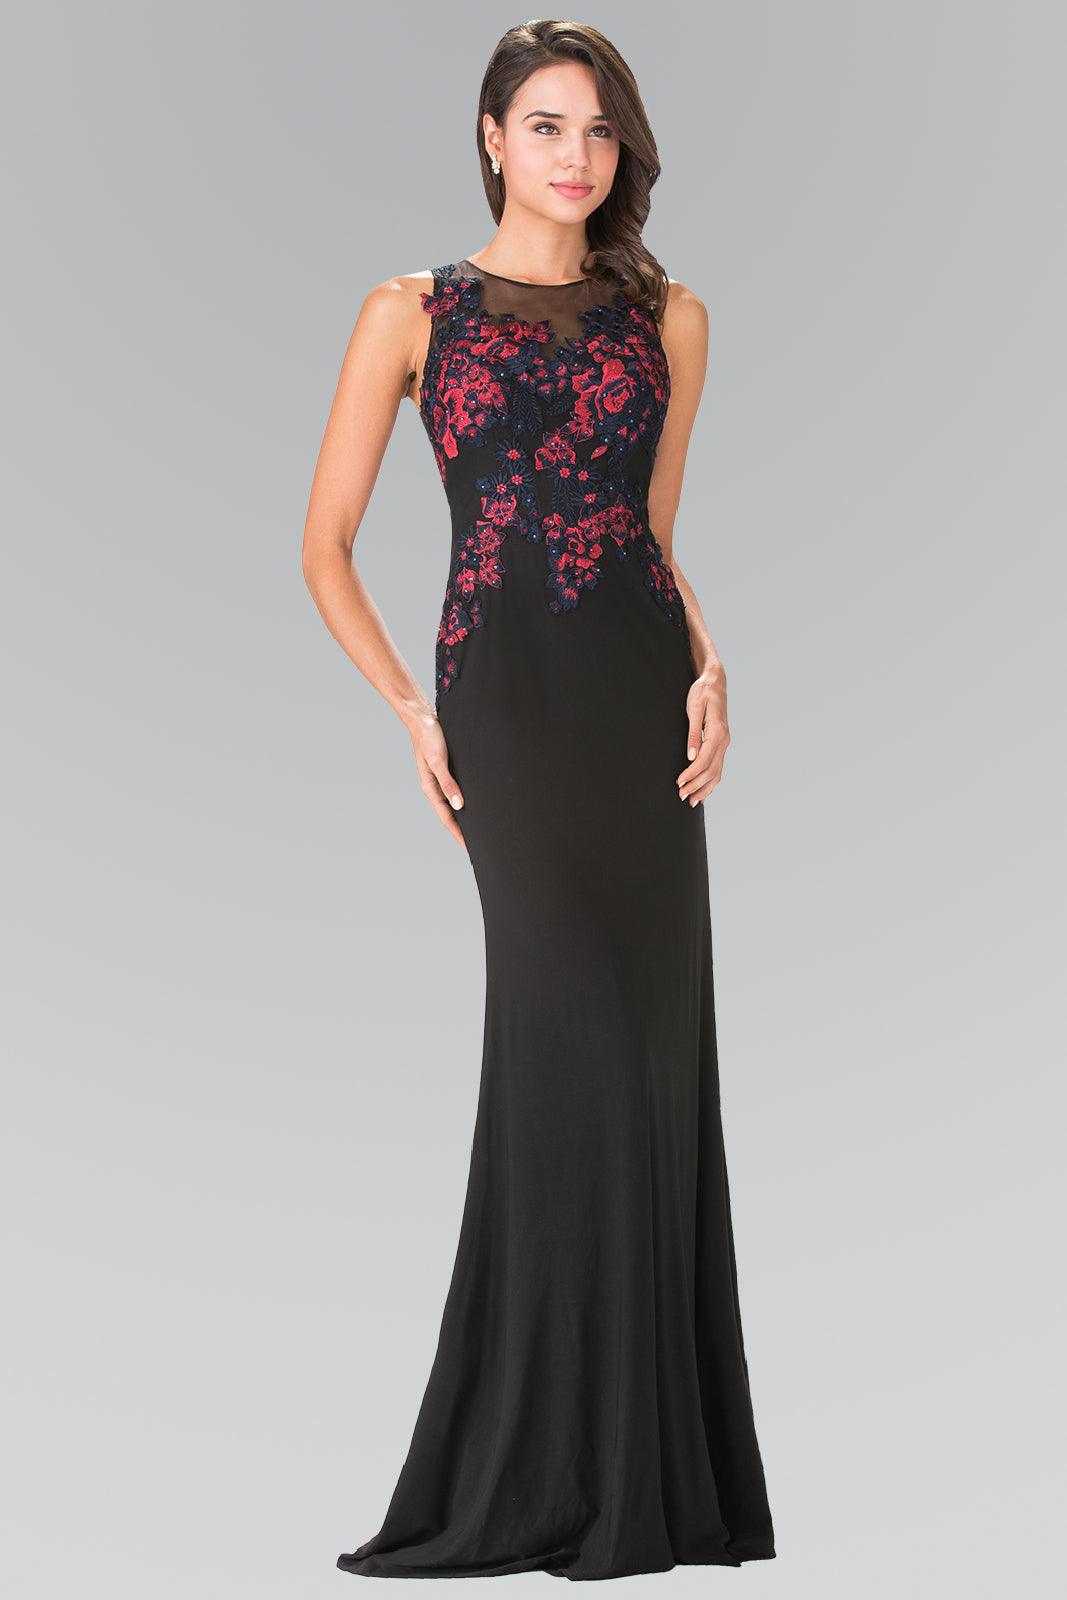 Long Formal Dress Evening Prom Gown - The Dress Outlet Elizabeth K